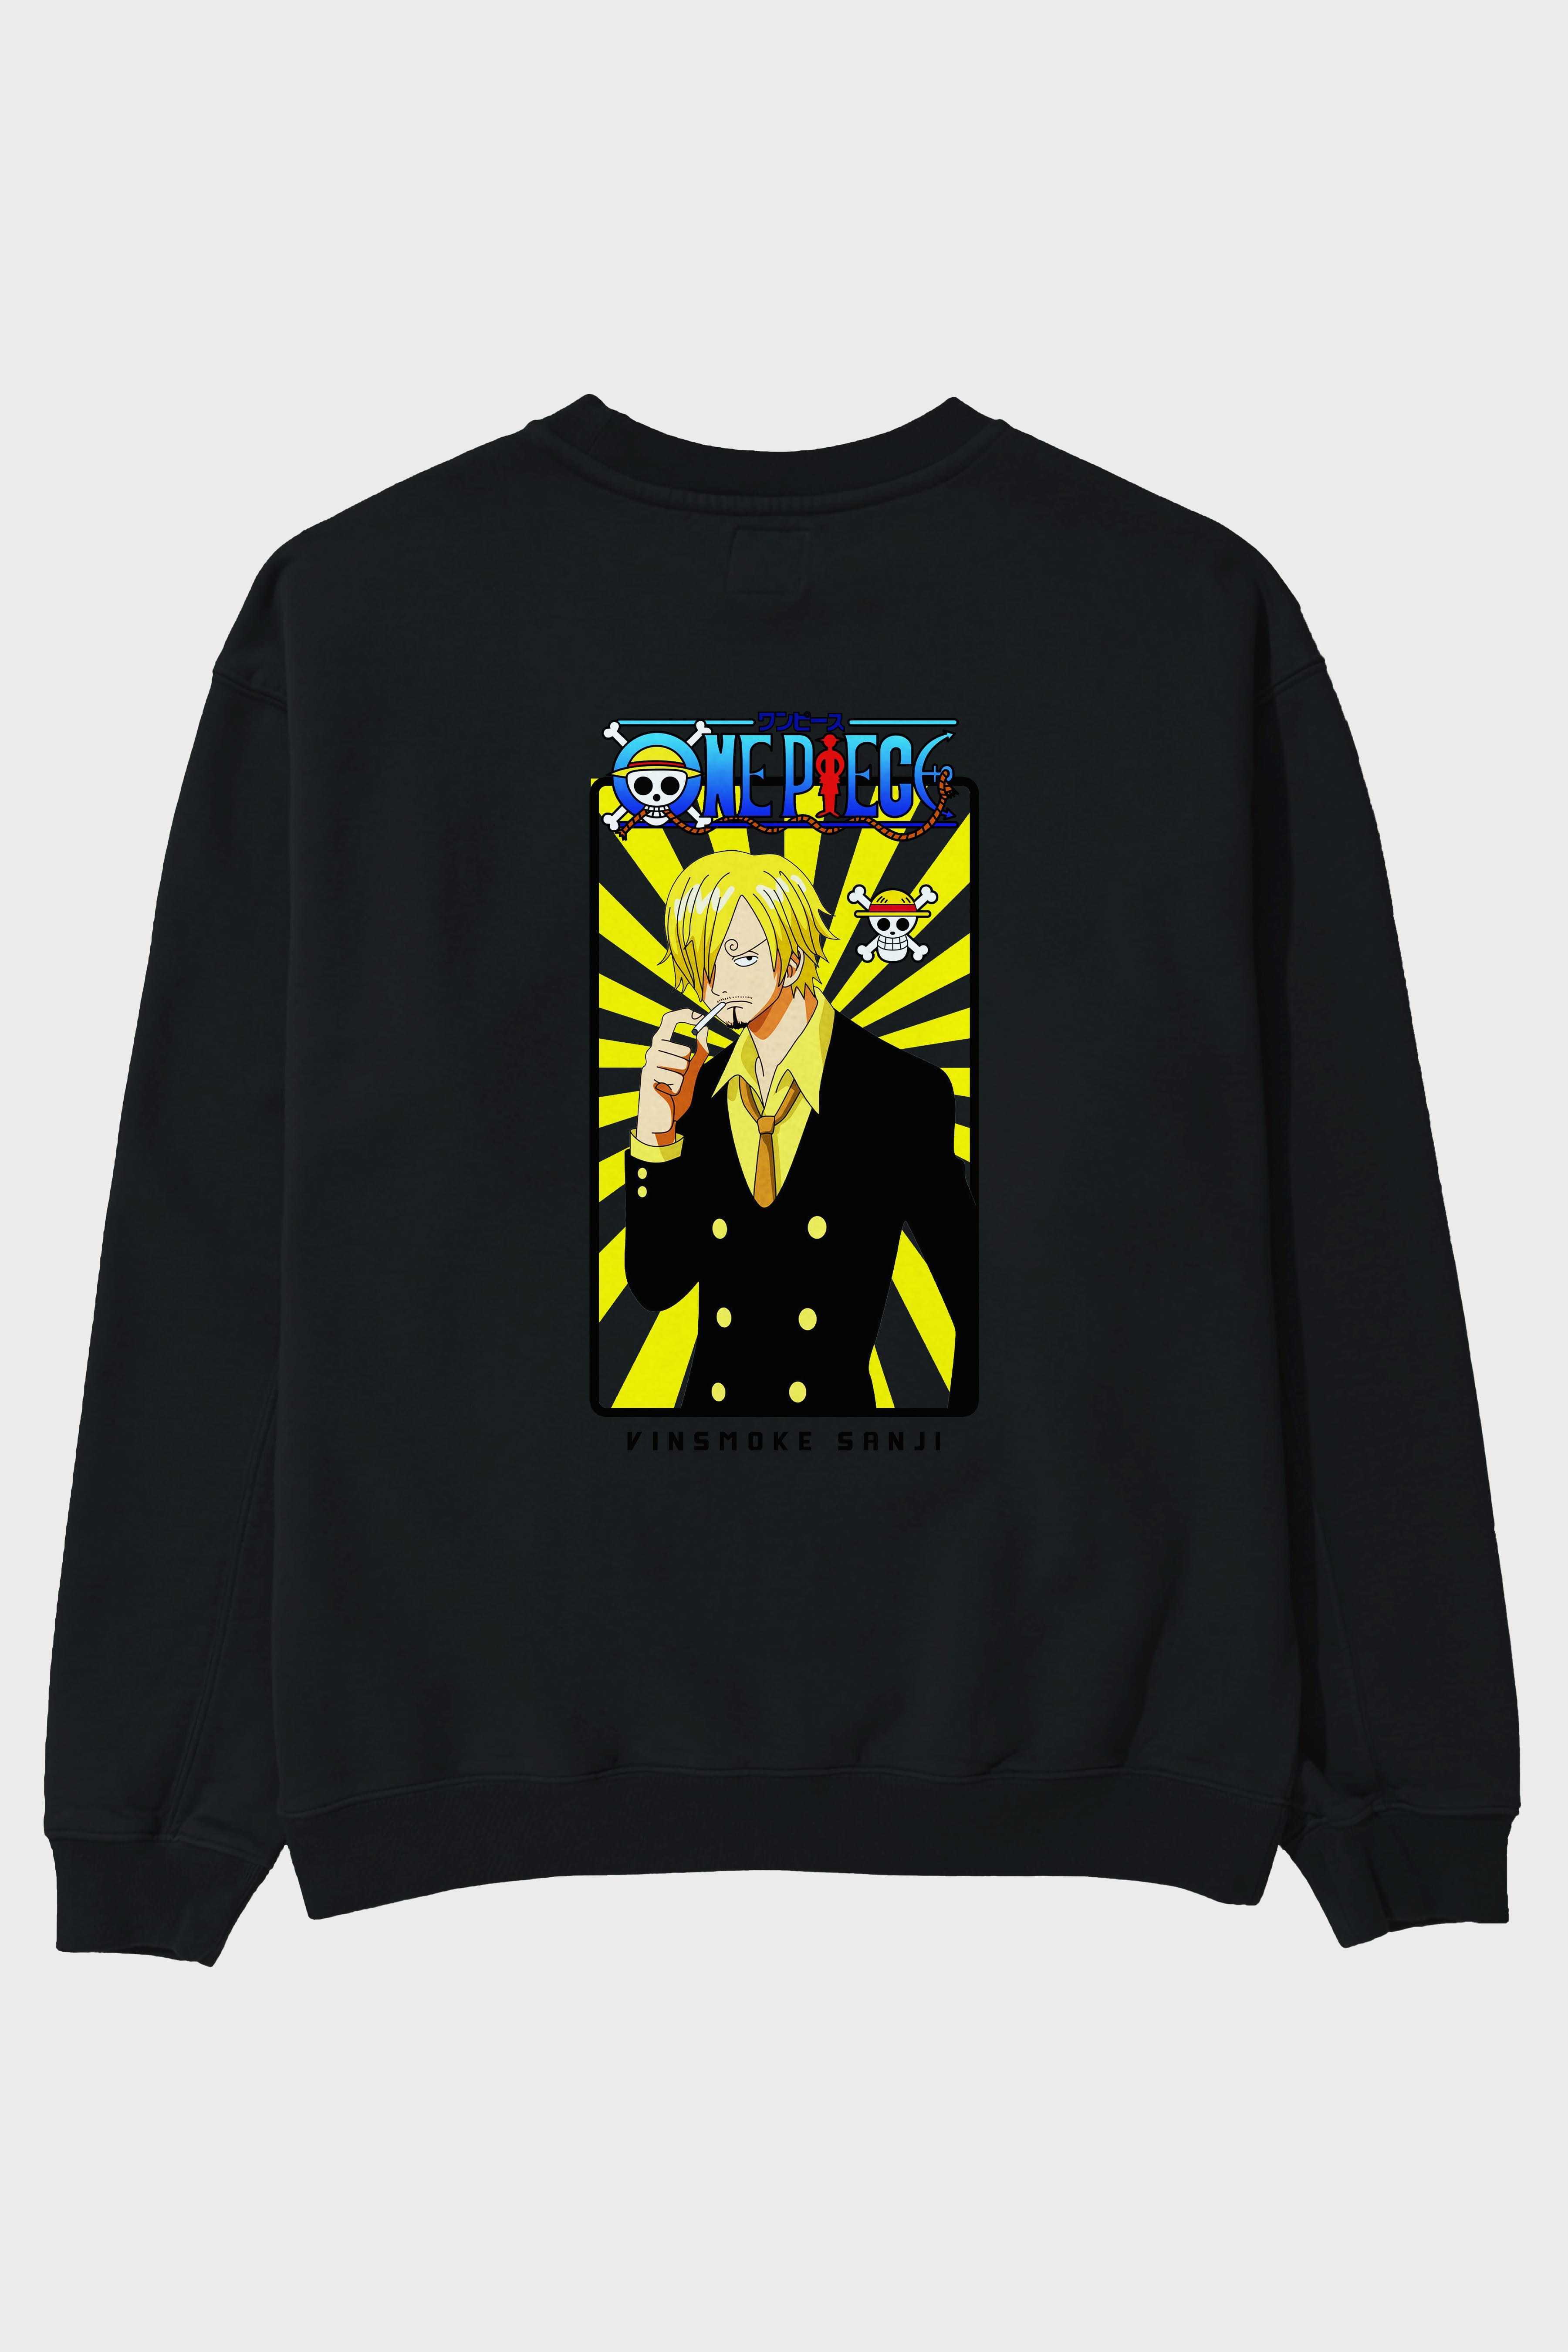 Sanji 4 Arka Baskılı Anime Oversize Sweatshirt Erkek Kadın Unisex